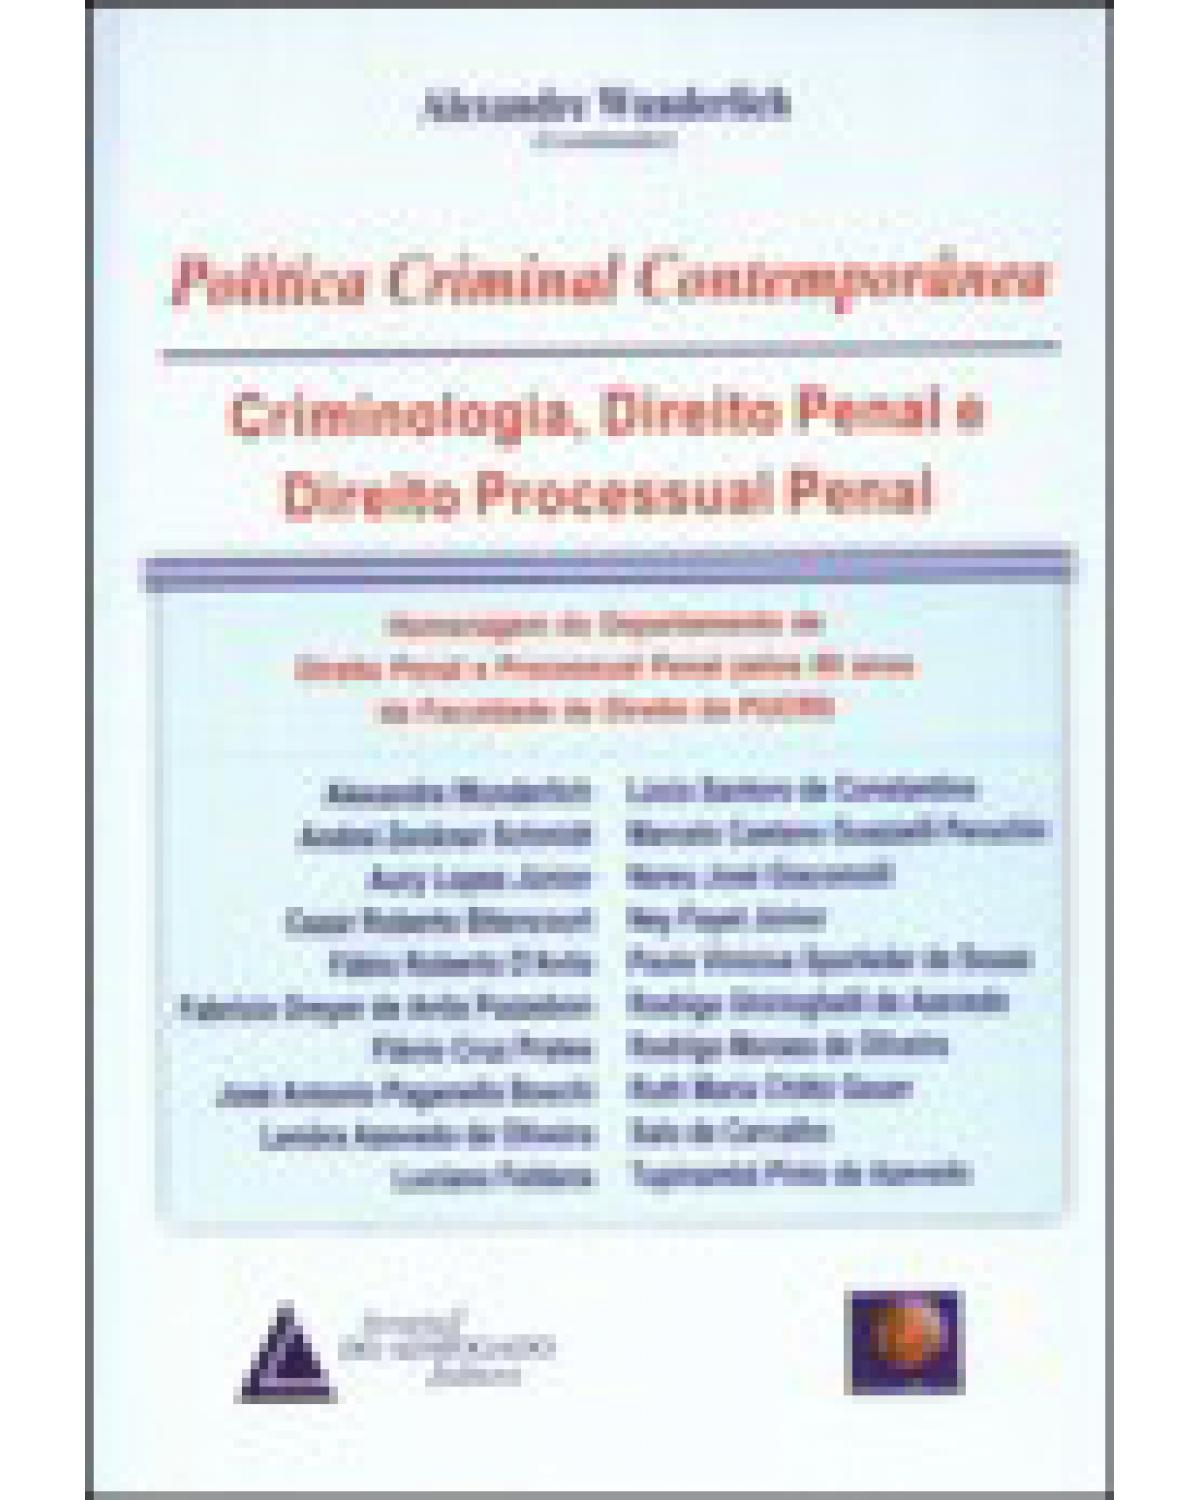 Política criminal contemporânea: Criminologia, direito penal e direito processual penal - 1ª Edição